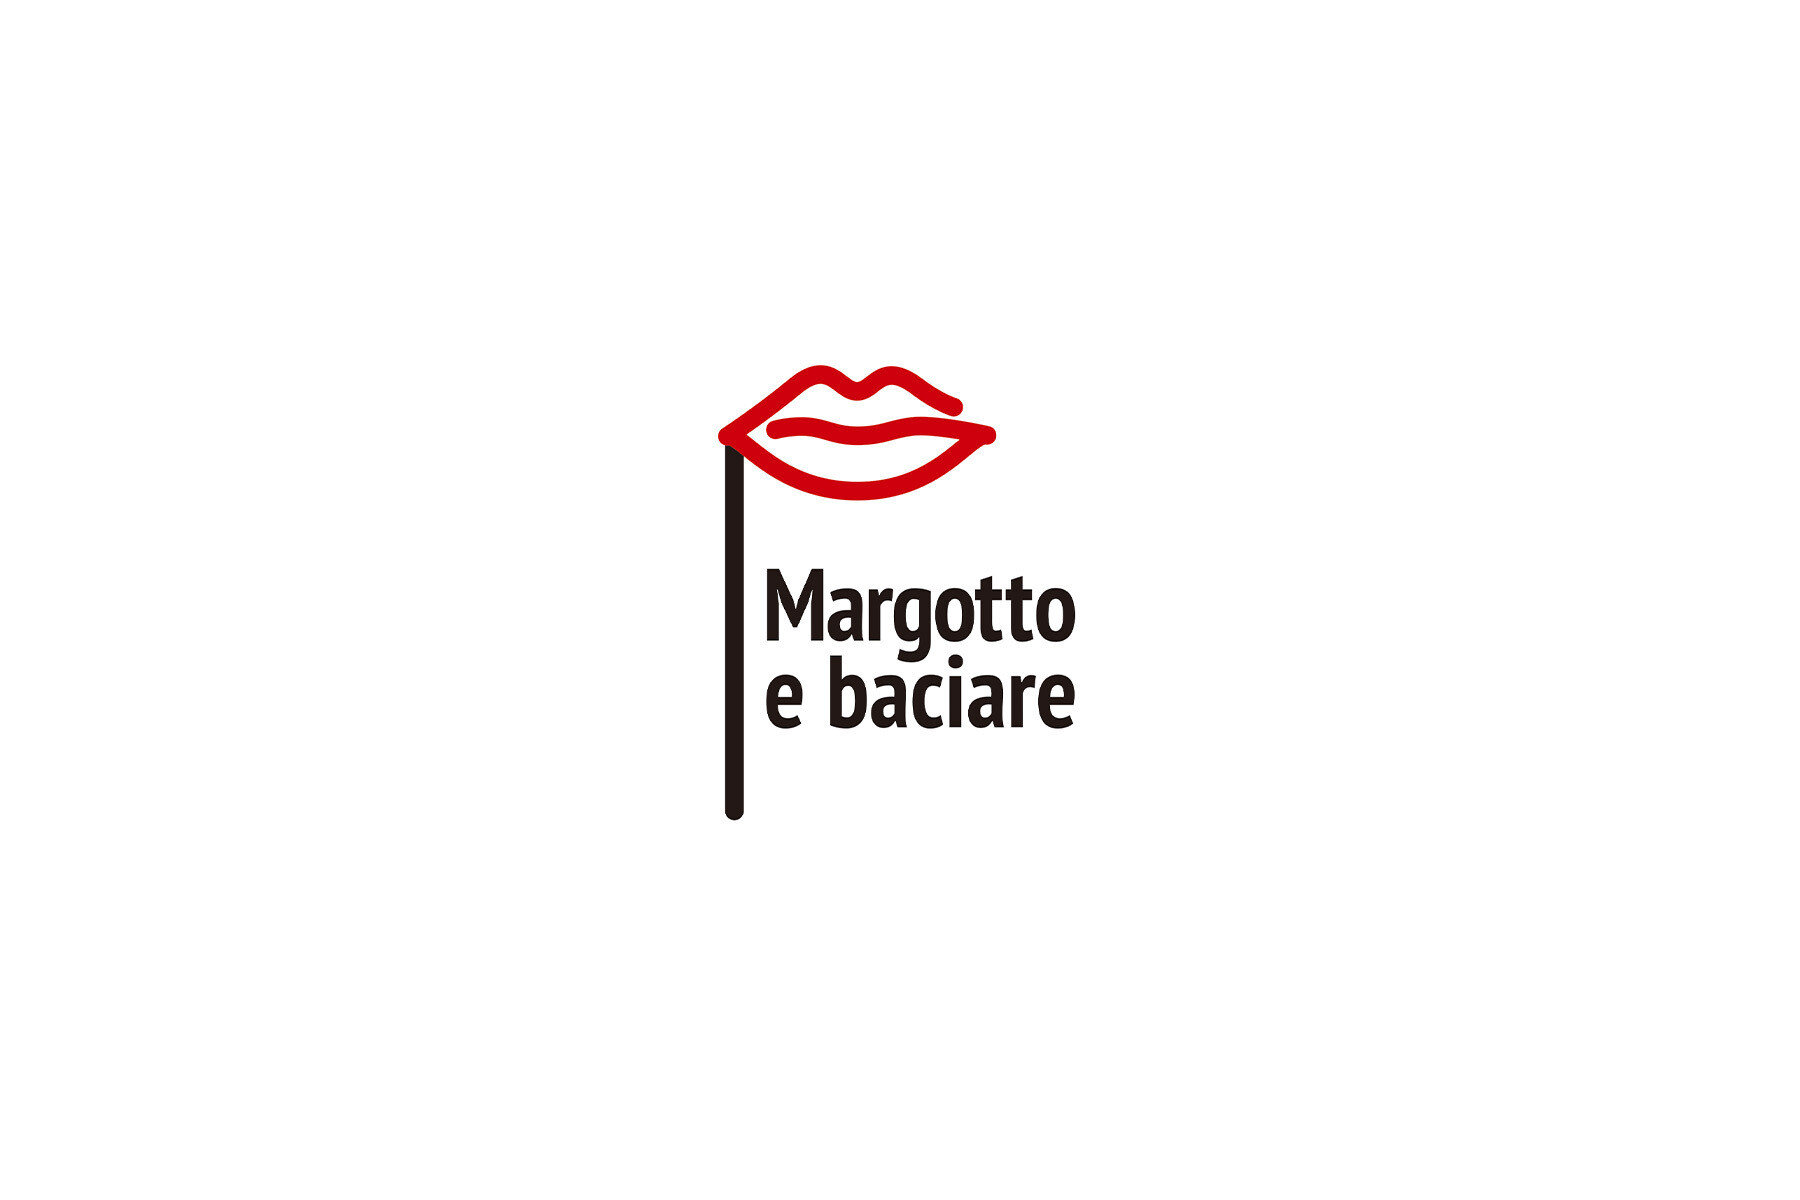 Margotto e Baciare's images1